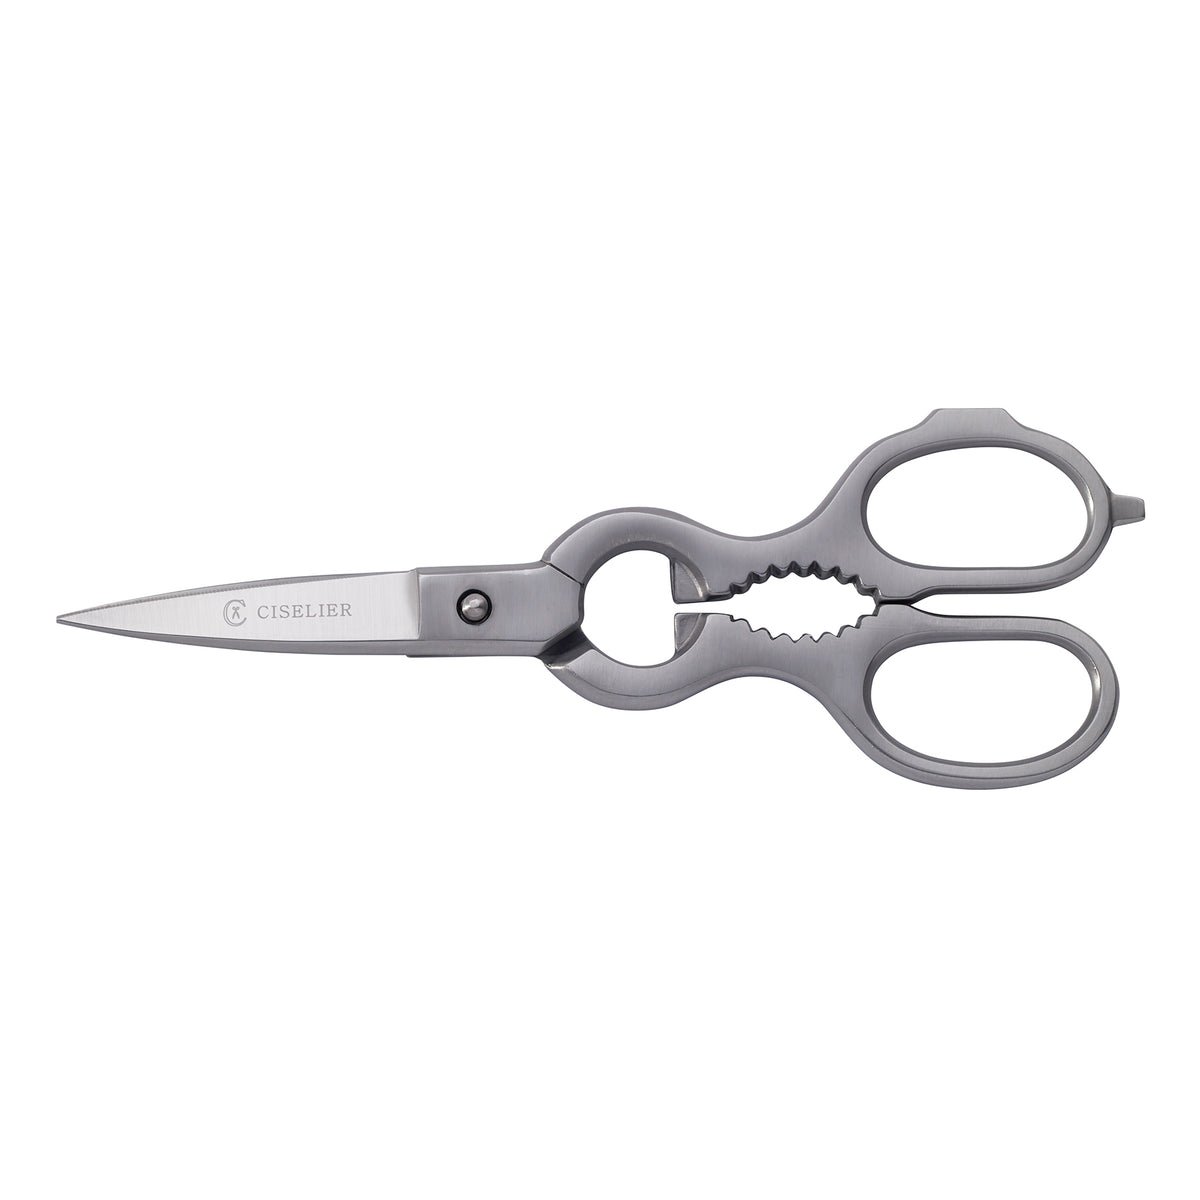 alpen kitchen scissors